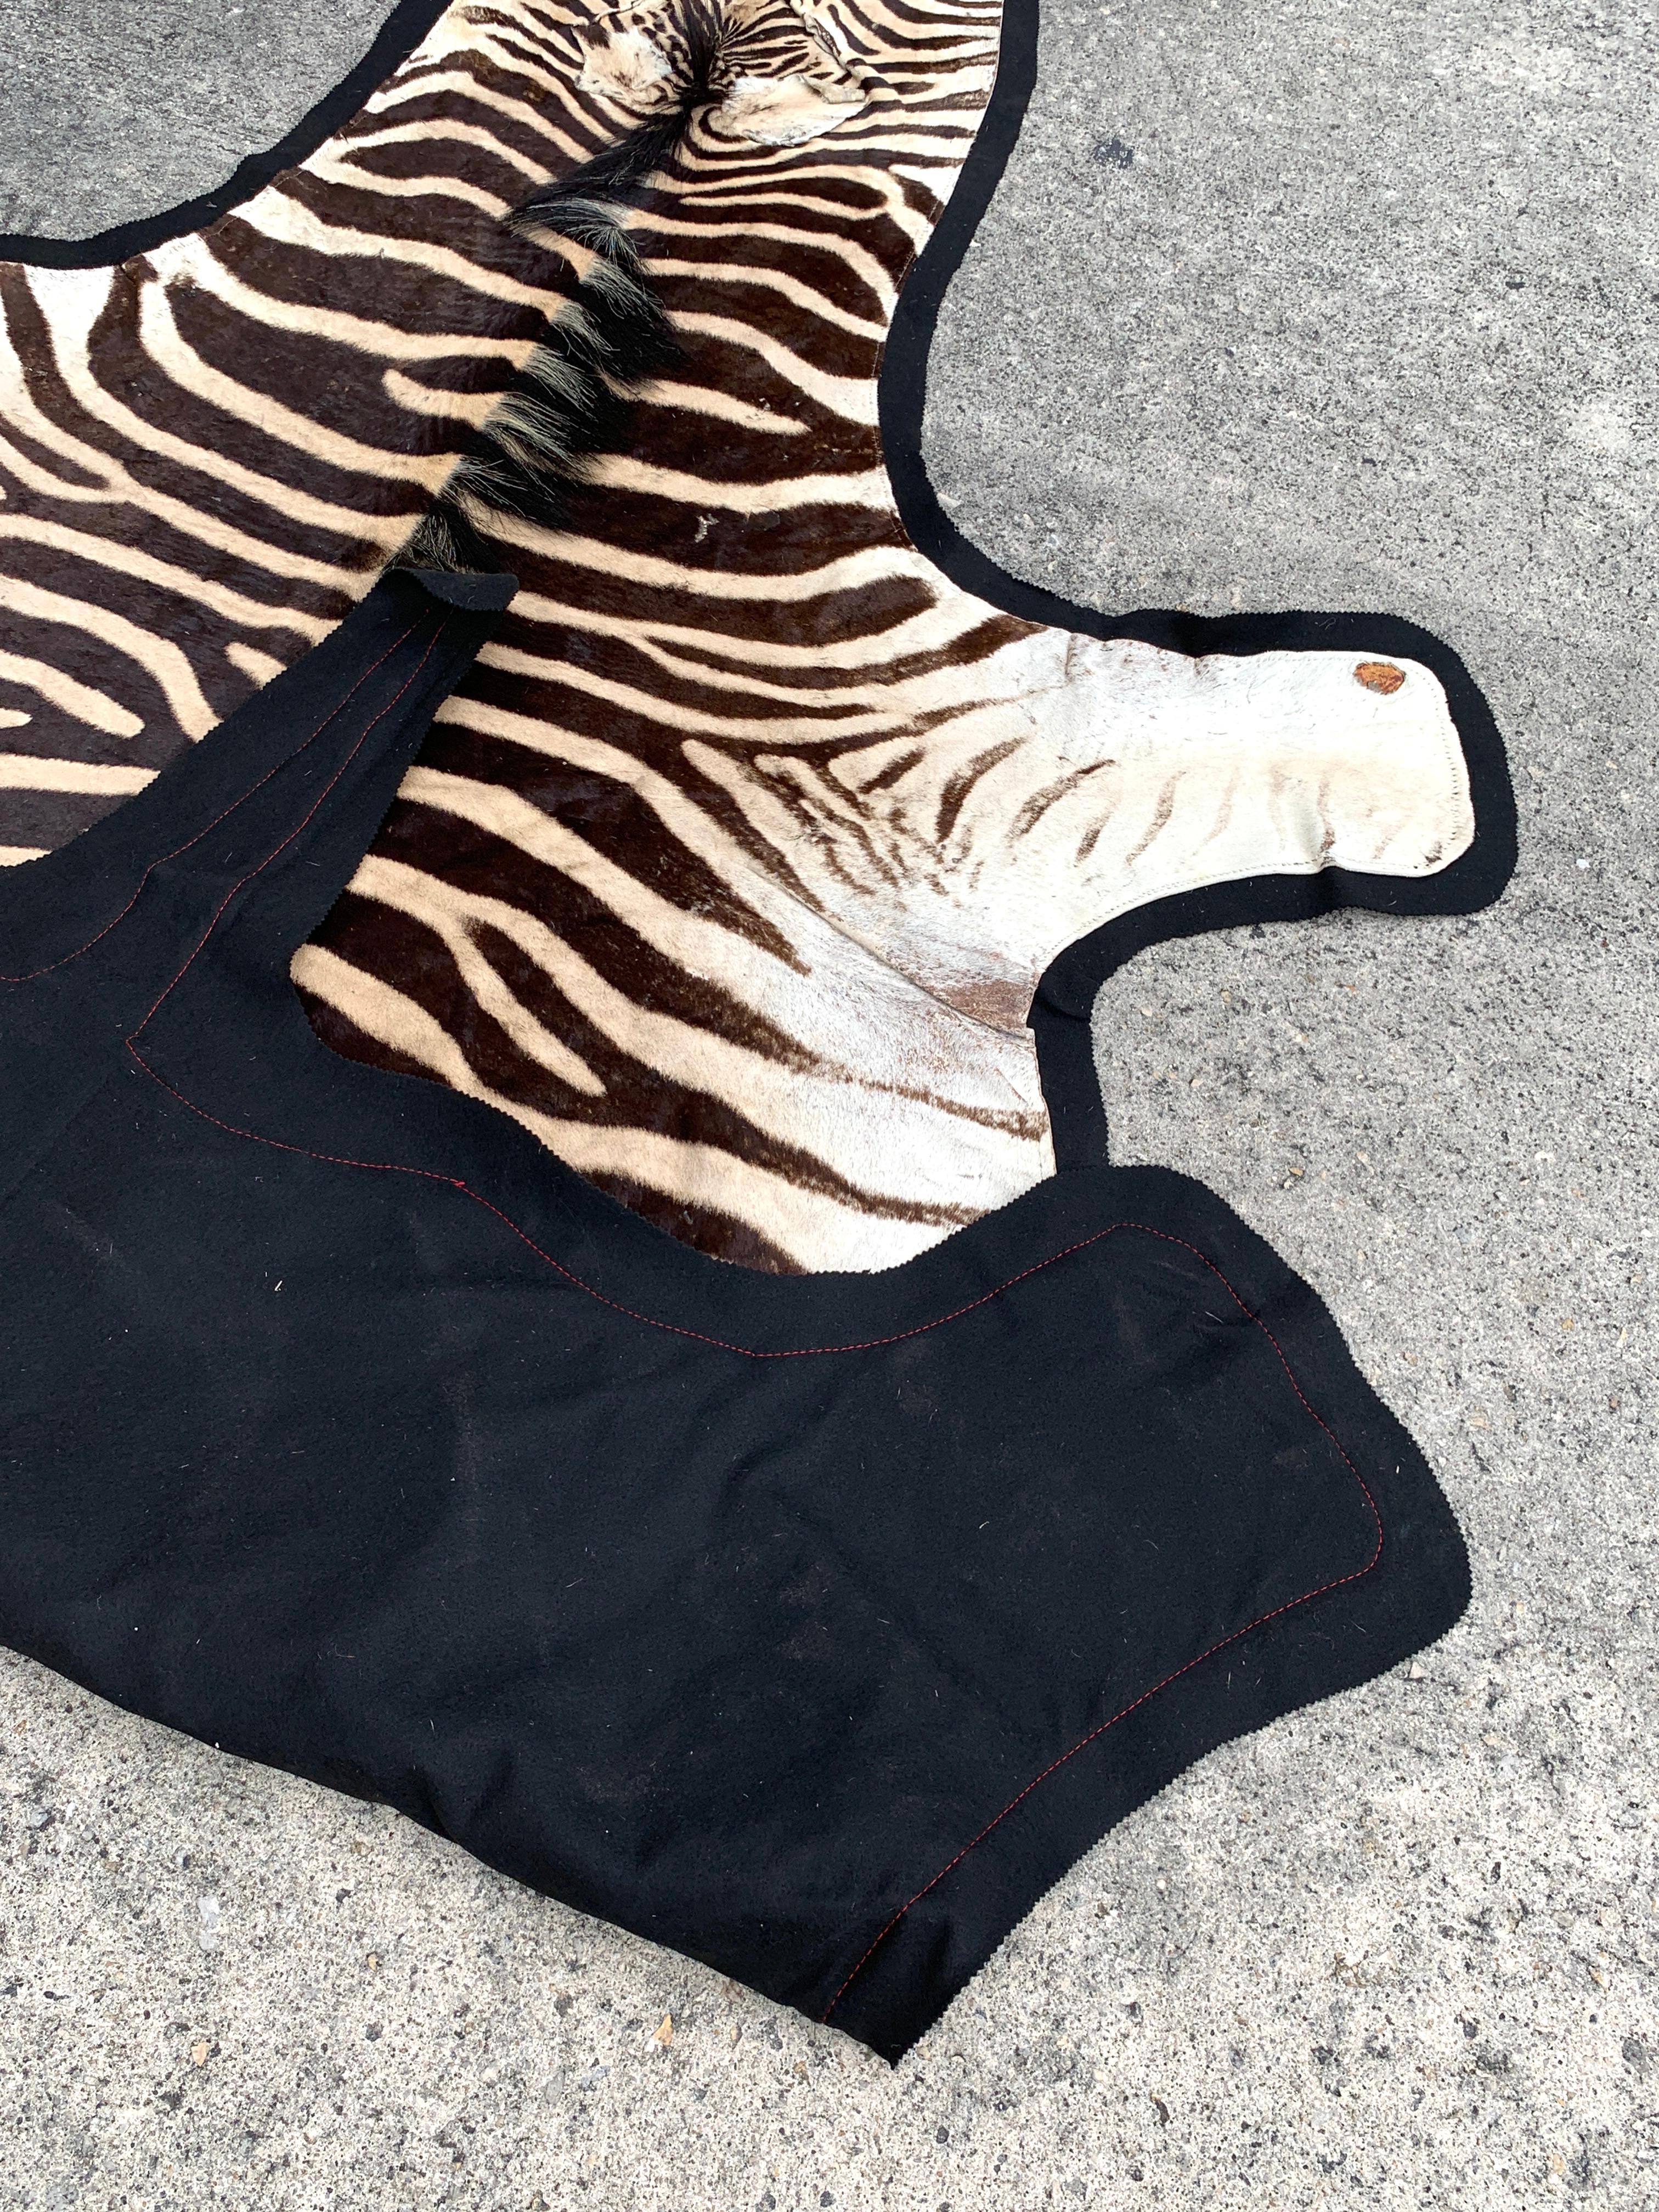 Vintage Zebra Hide Rug, Newly Backed 9